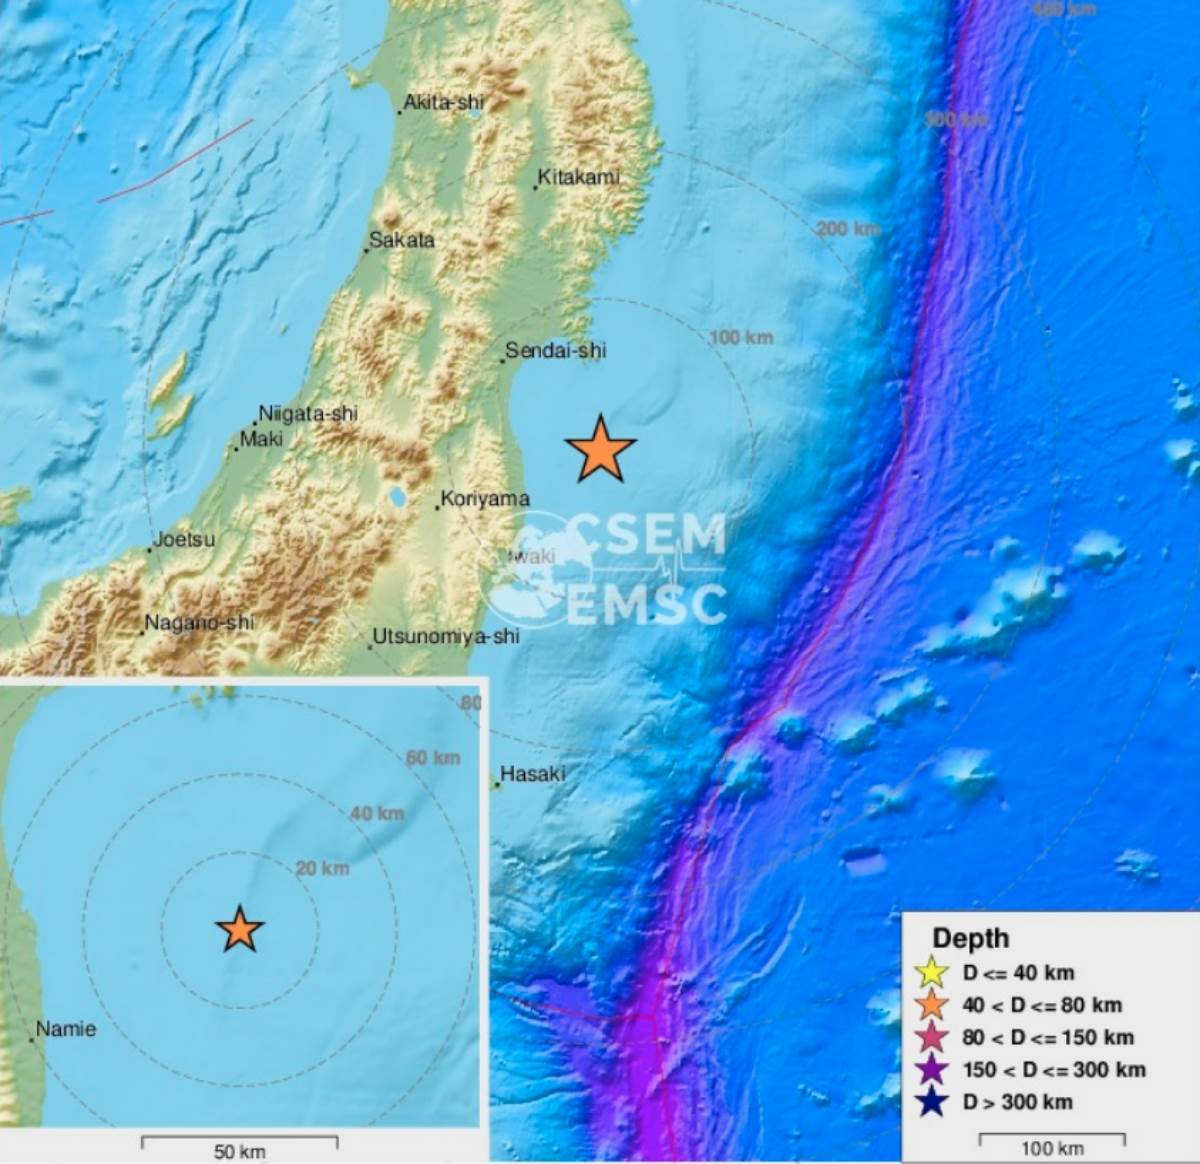  Zemljotres jačine 7.3 rihtera zadesio fukušimu 